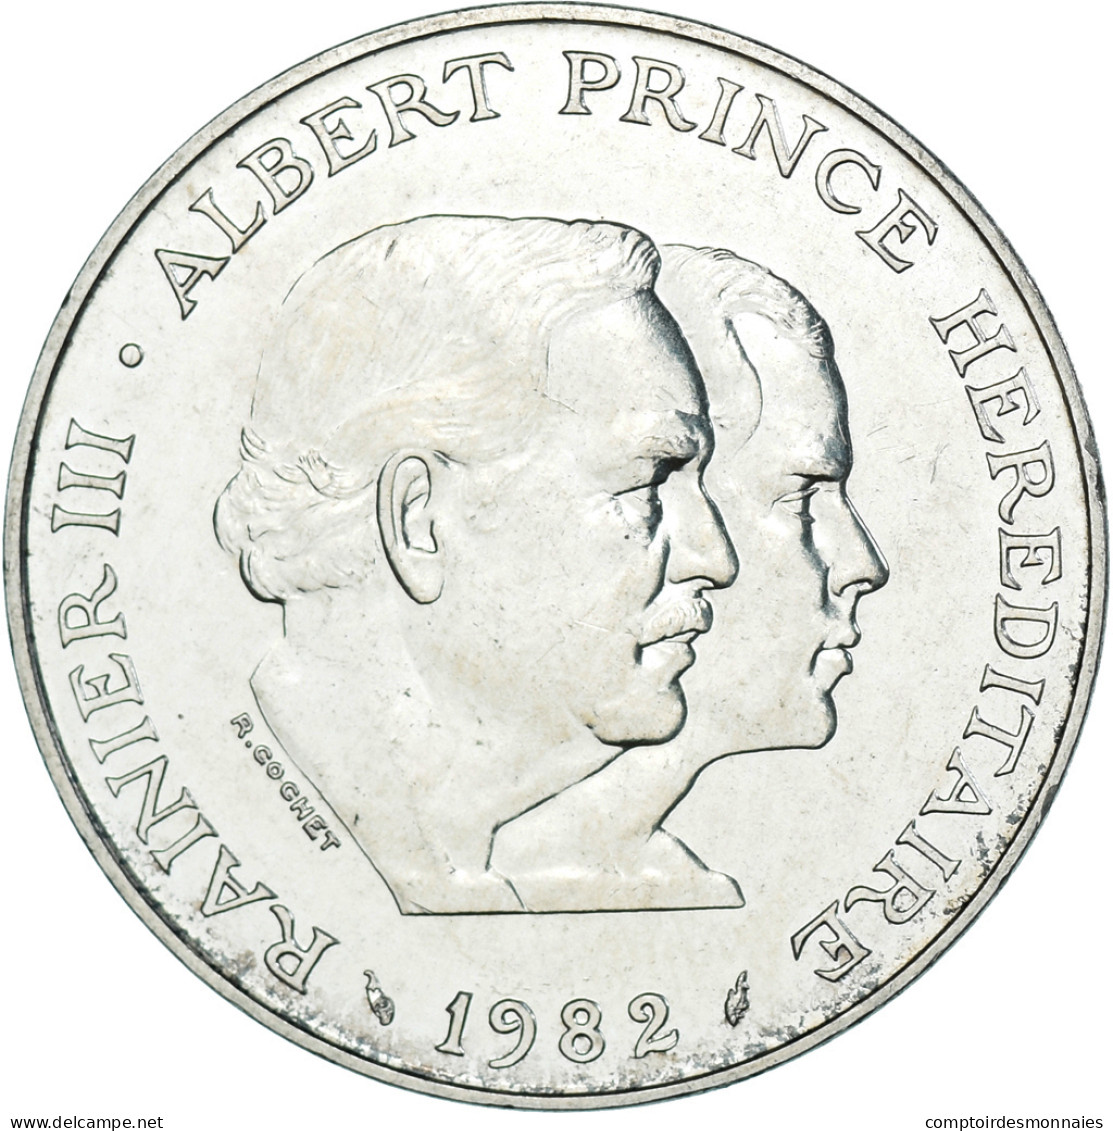 Monnaie, Monaco, Rainier III & Albert, 100 Francs, 1982, Monaco, SUP, Argent - 1960-2001 Nouveaux Francs